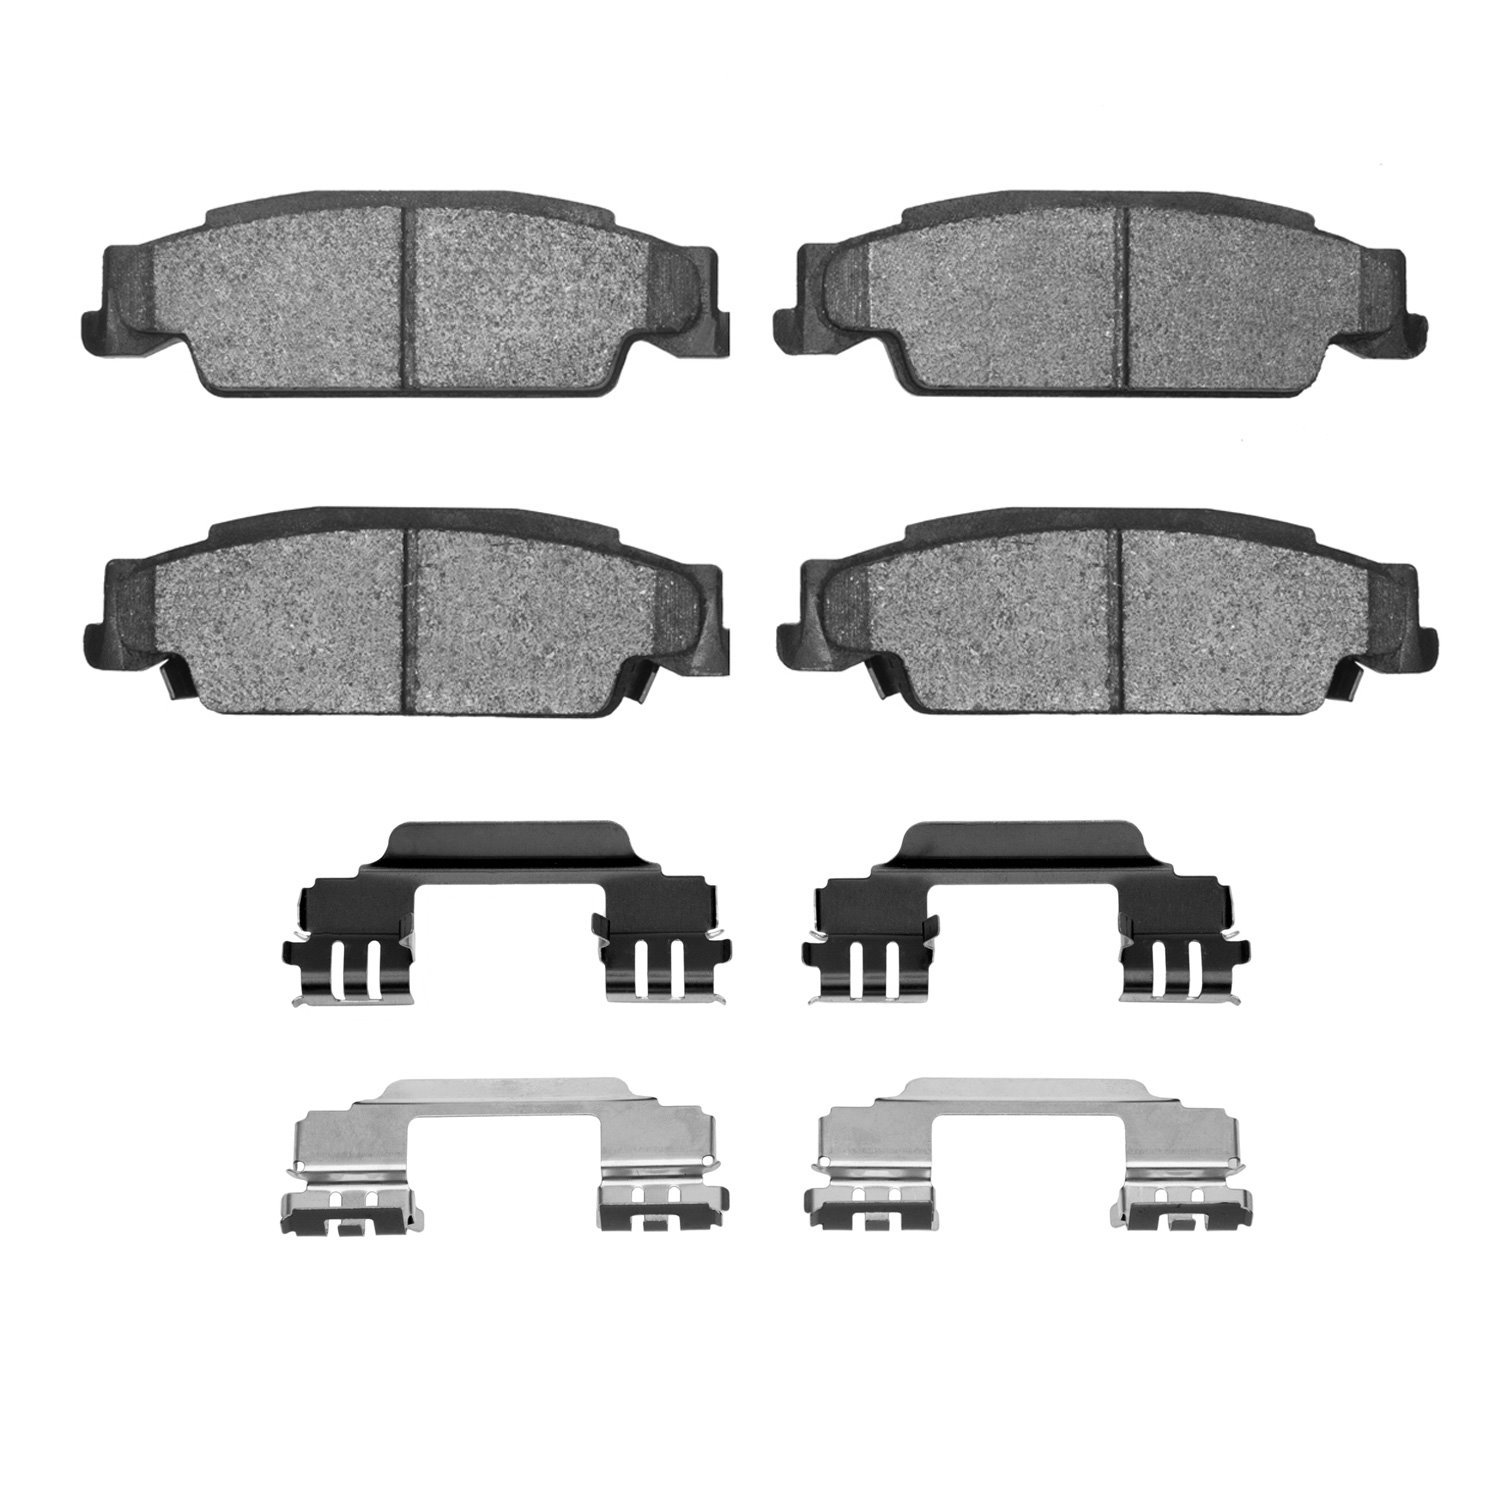 1310-0922-01 3000-Series Ceramic Brake Pads & Hardware Kit, 2003-2011 GM, Position: Rear